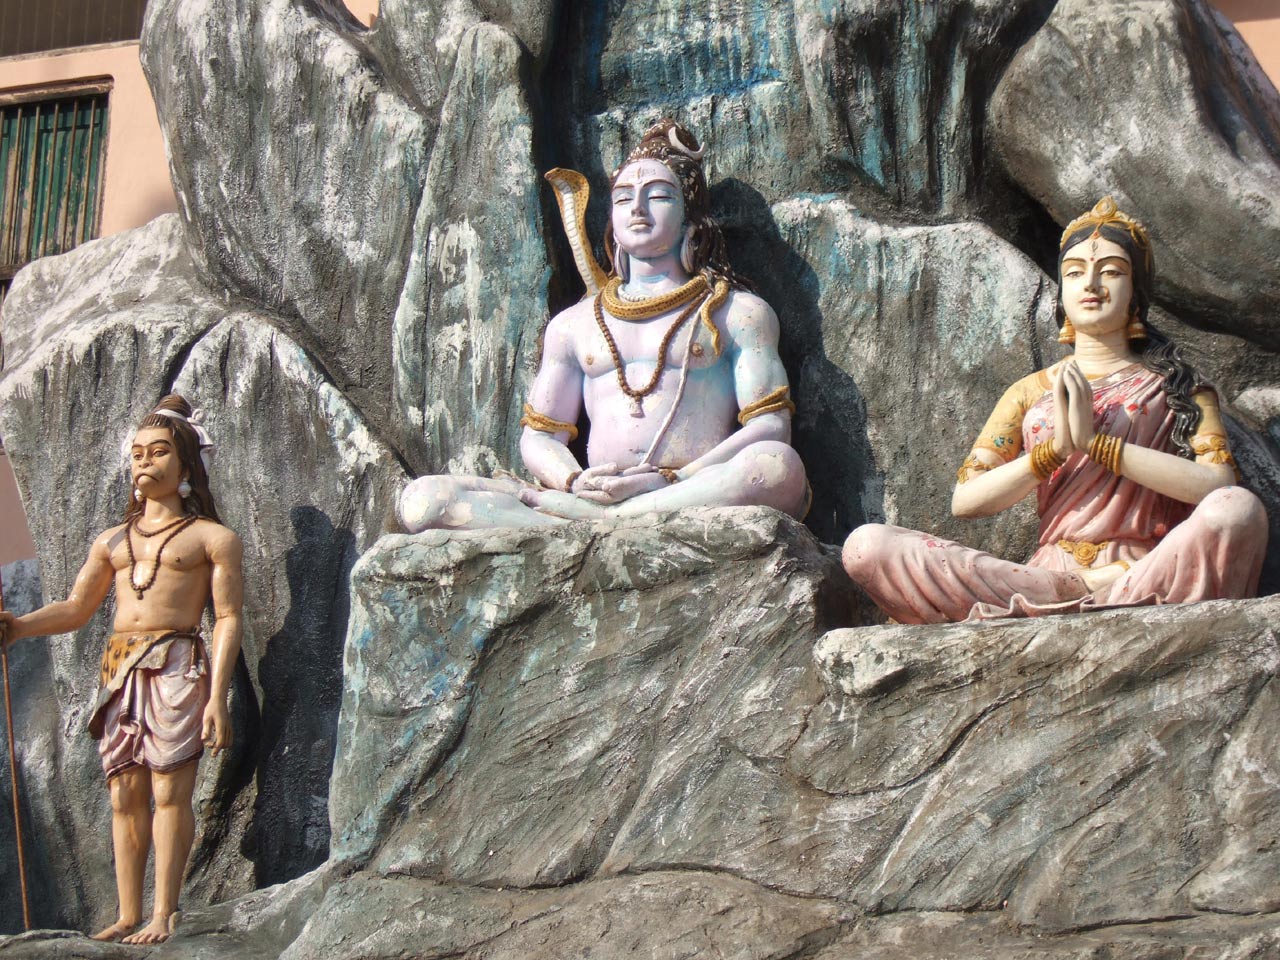 http://2.bp.blogspot.com/-b9VjwabLLLg/TbAAJSpqENI/AAAAAAAAARo/RqOMdz4MTpg/s1600/rishikesh-temple-of-hindu-god-at-india-pictures-collection.jpg